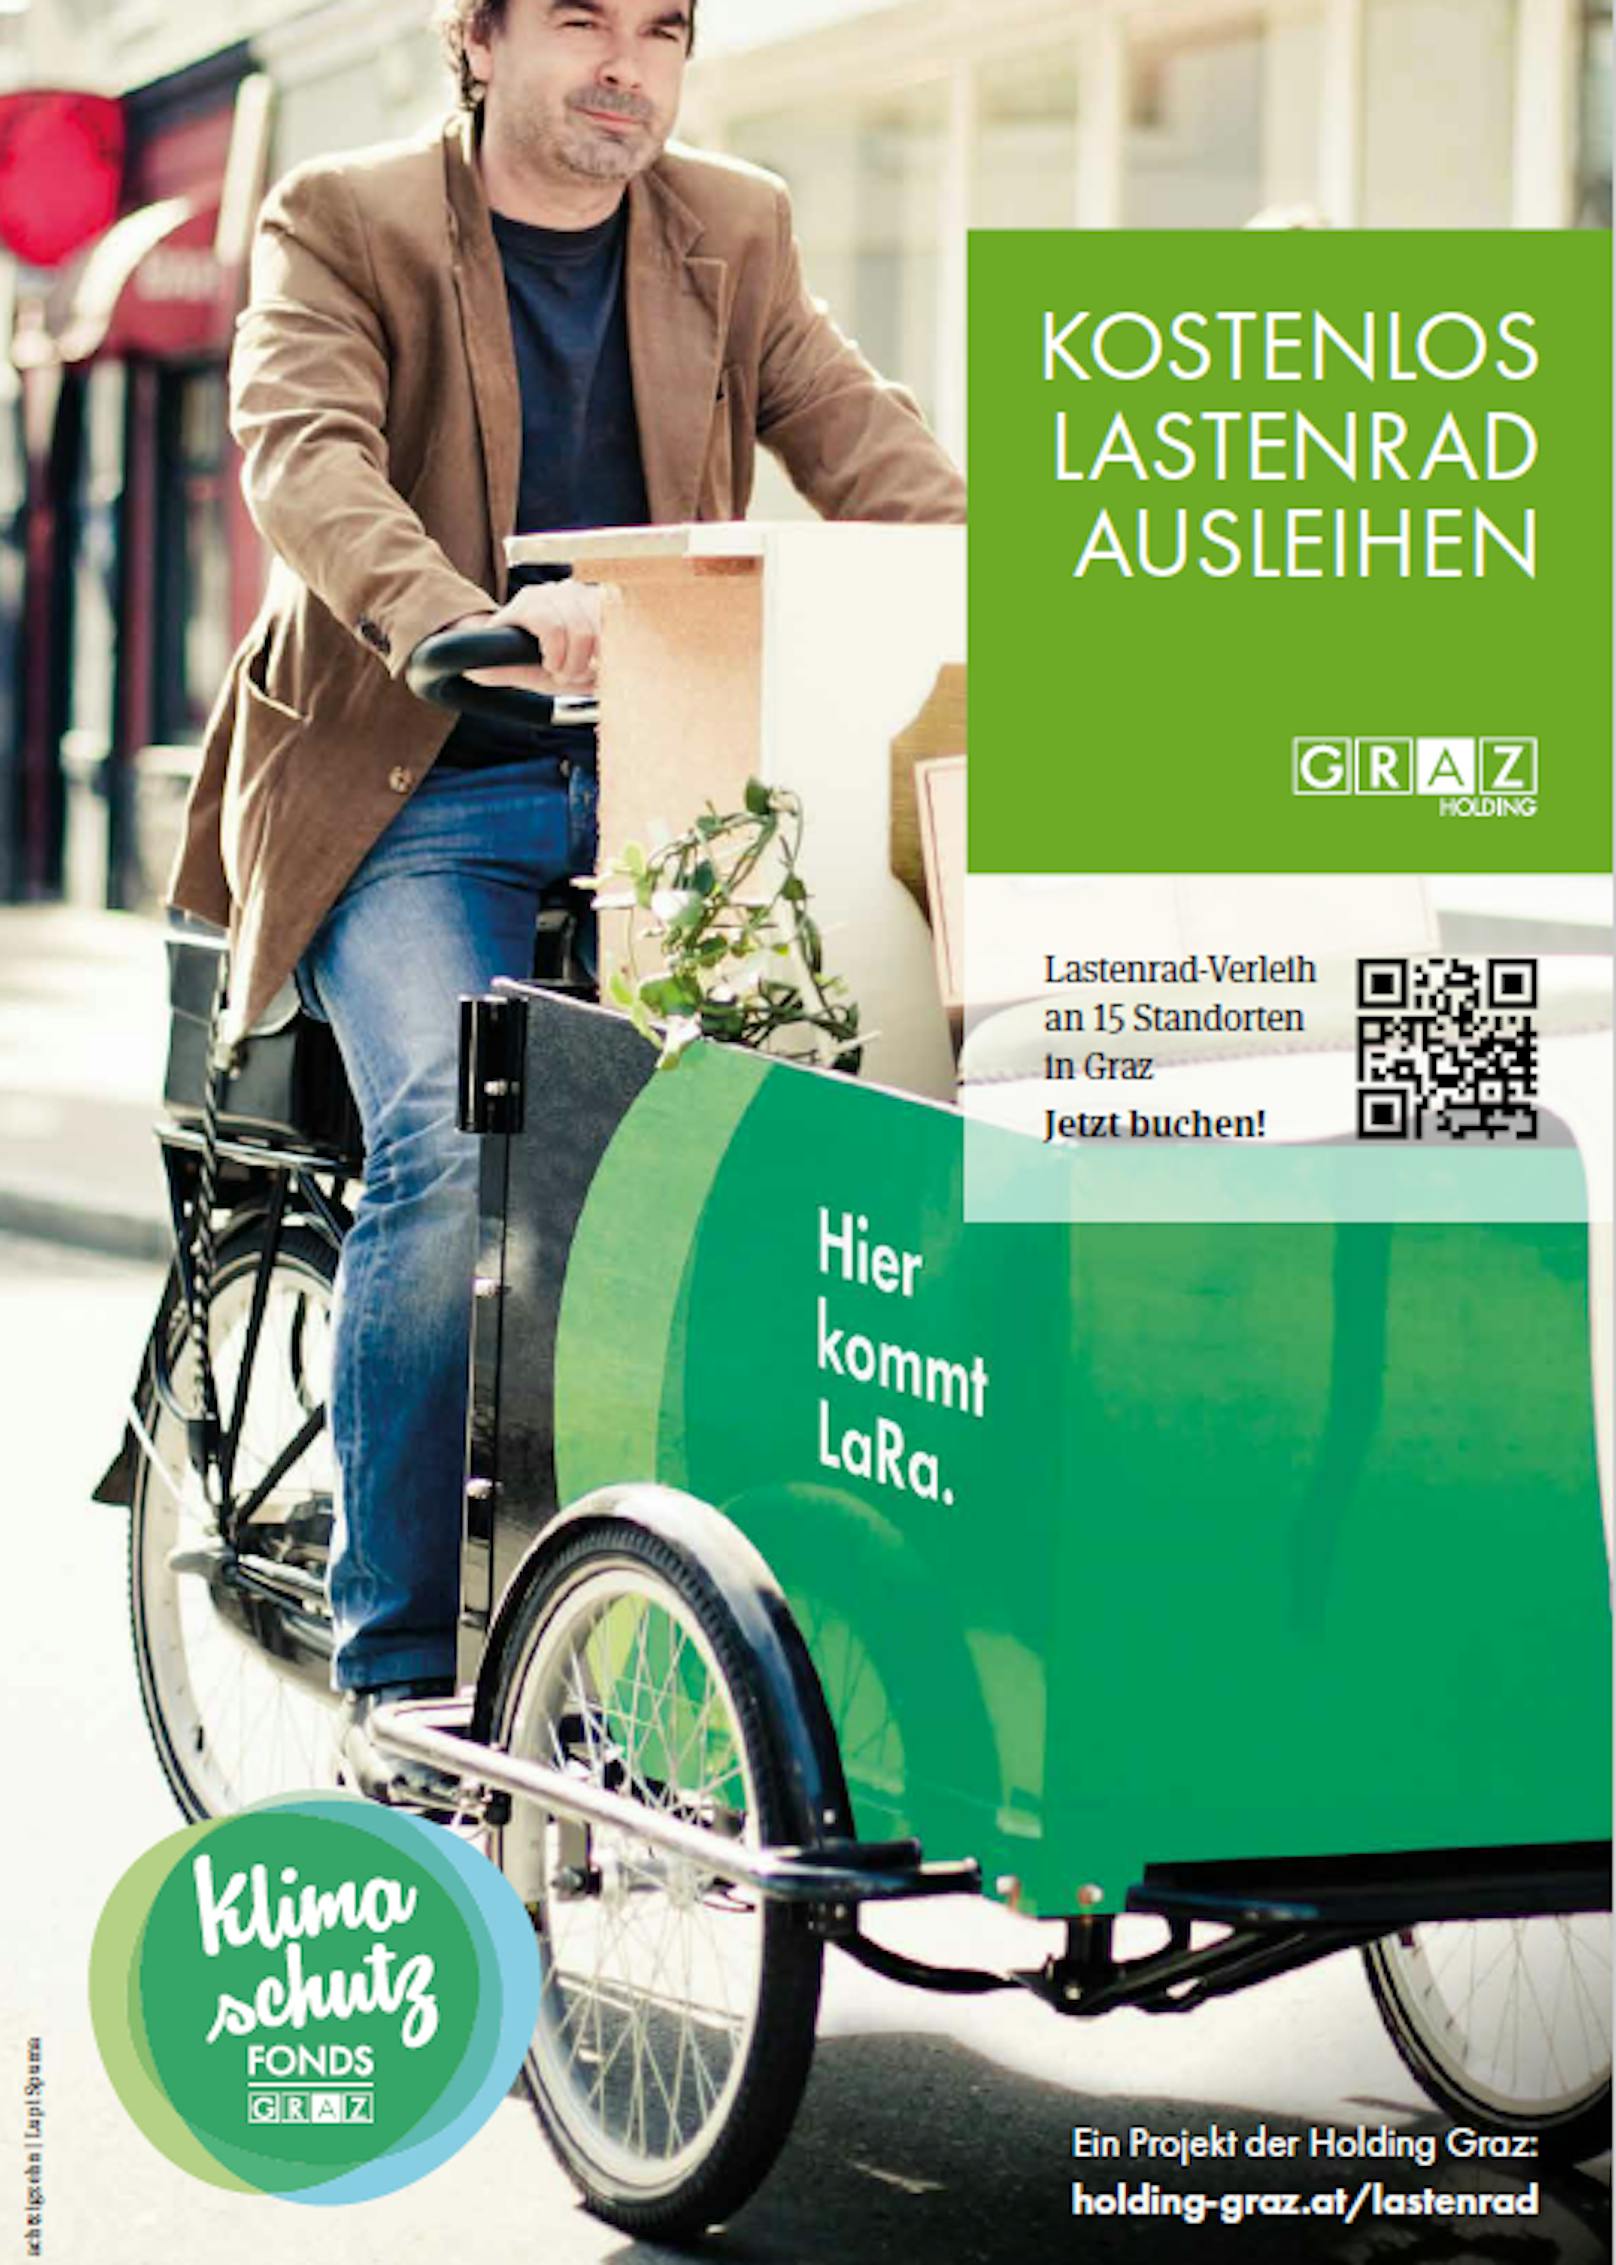 Der Flyer für "LaRa - Das Lastenrad"